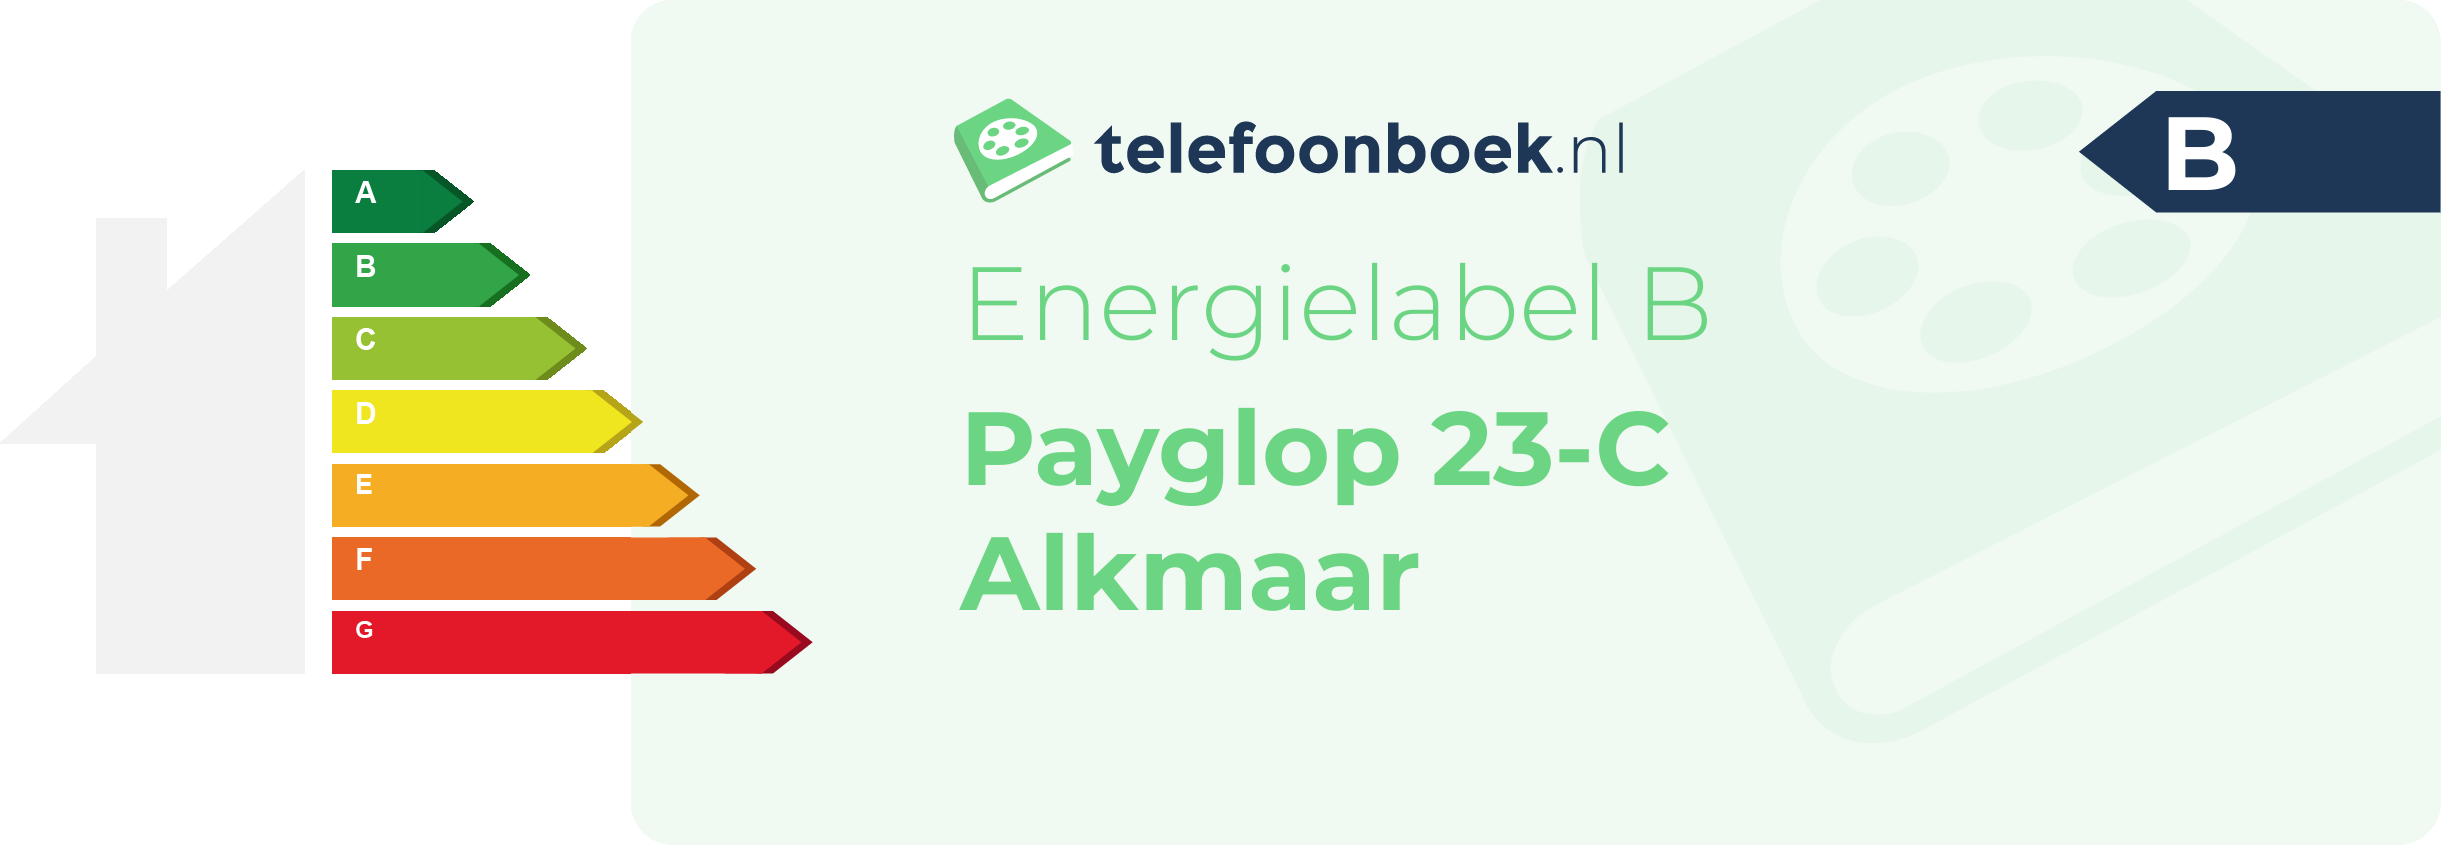 Energielabel Payglop 23-C Alkmaar